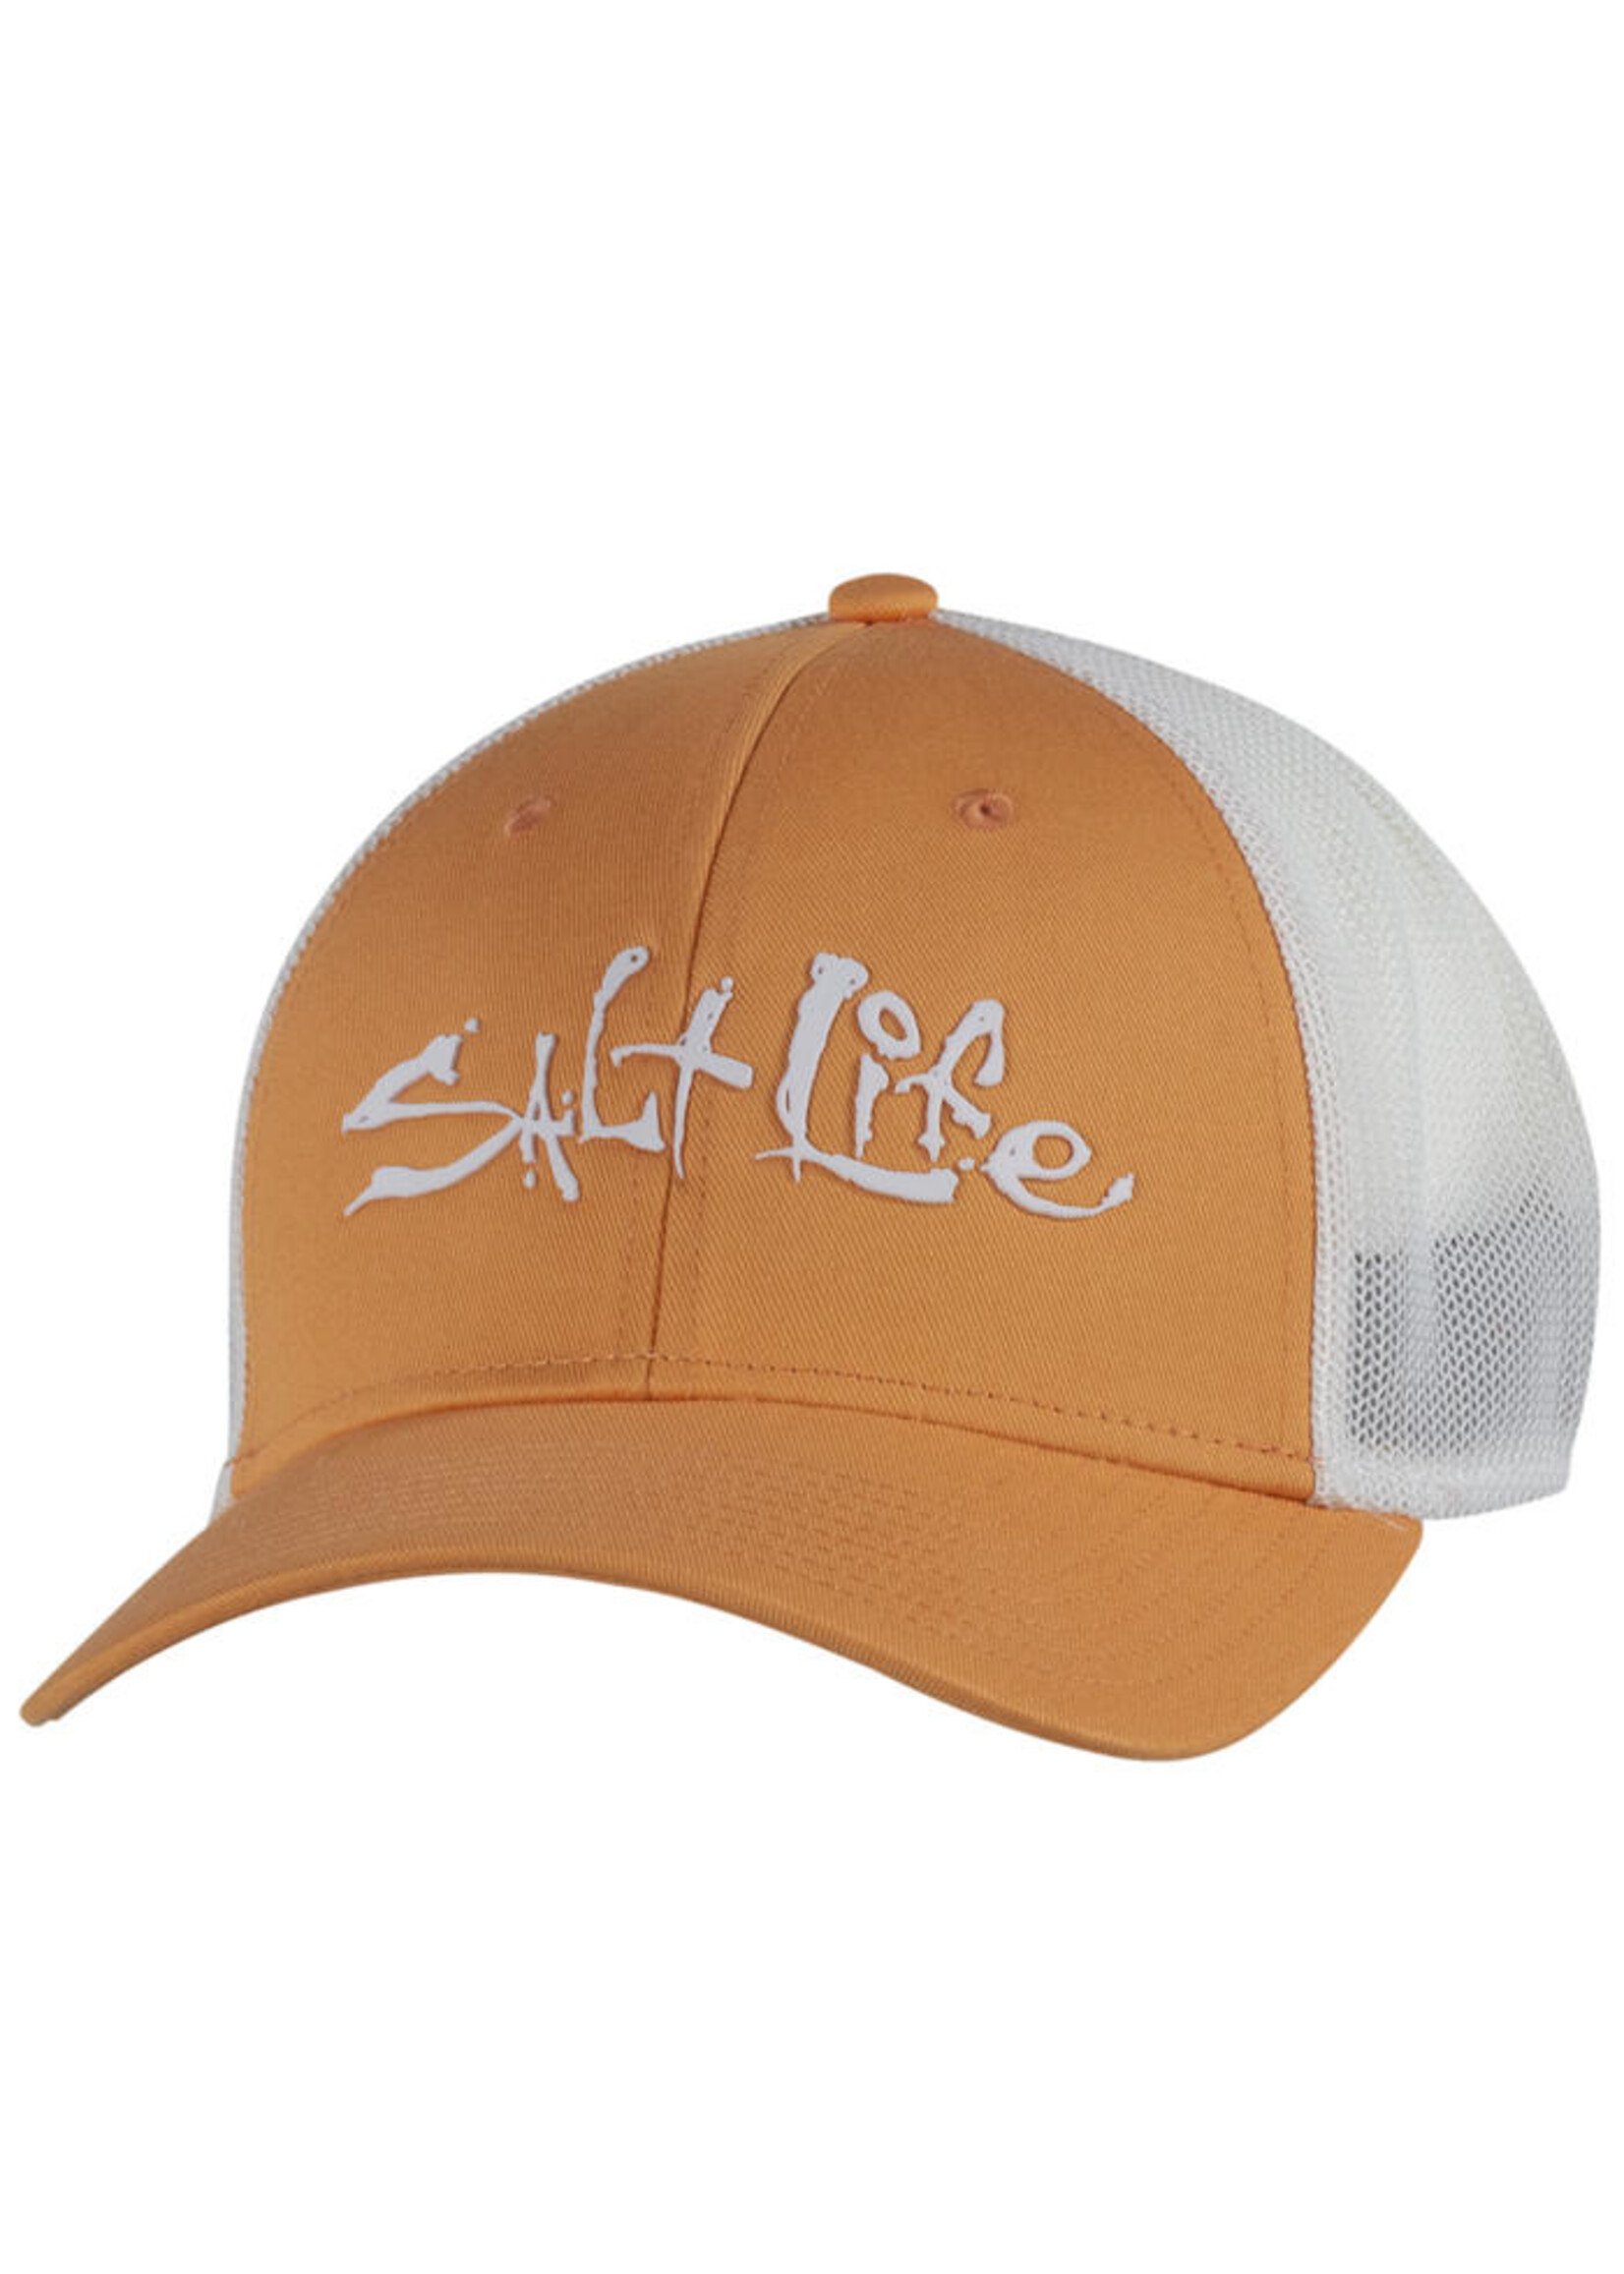 Salt Life Fish Dive Surf Stretch Fit Hat